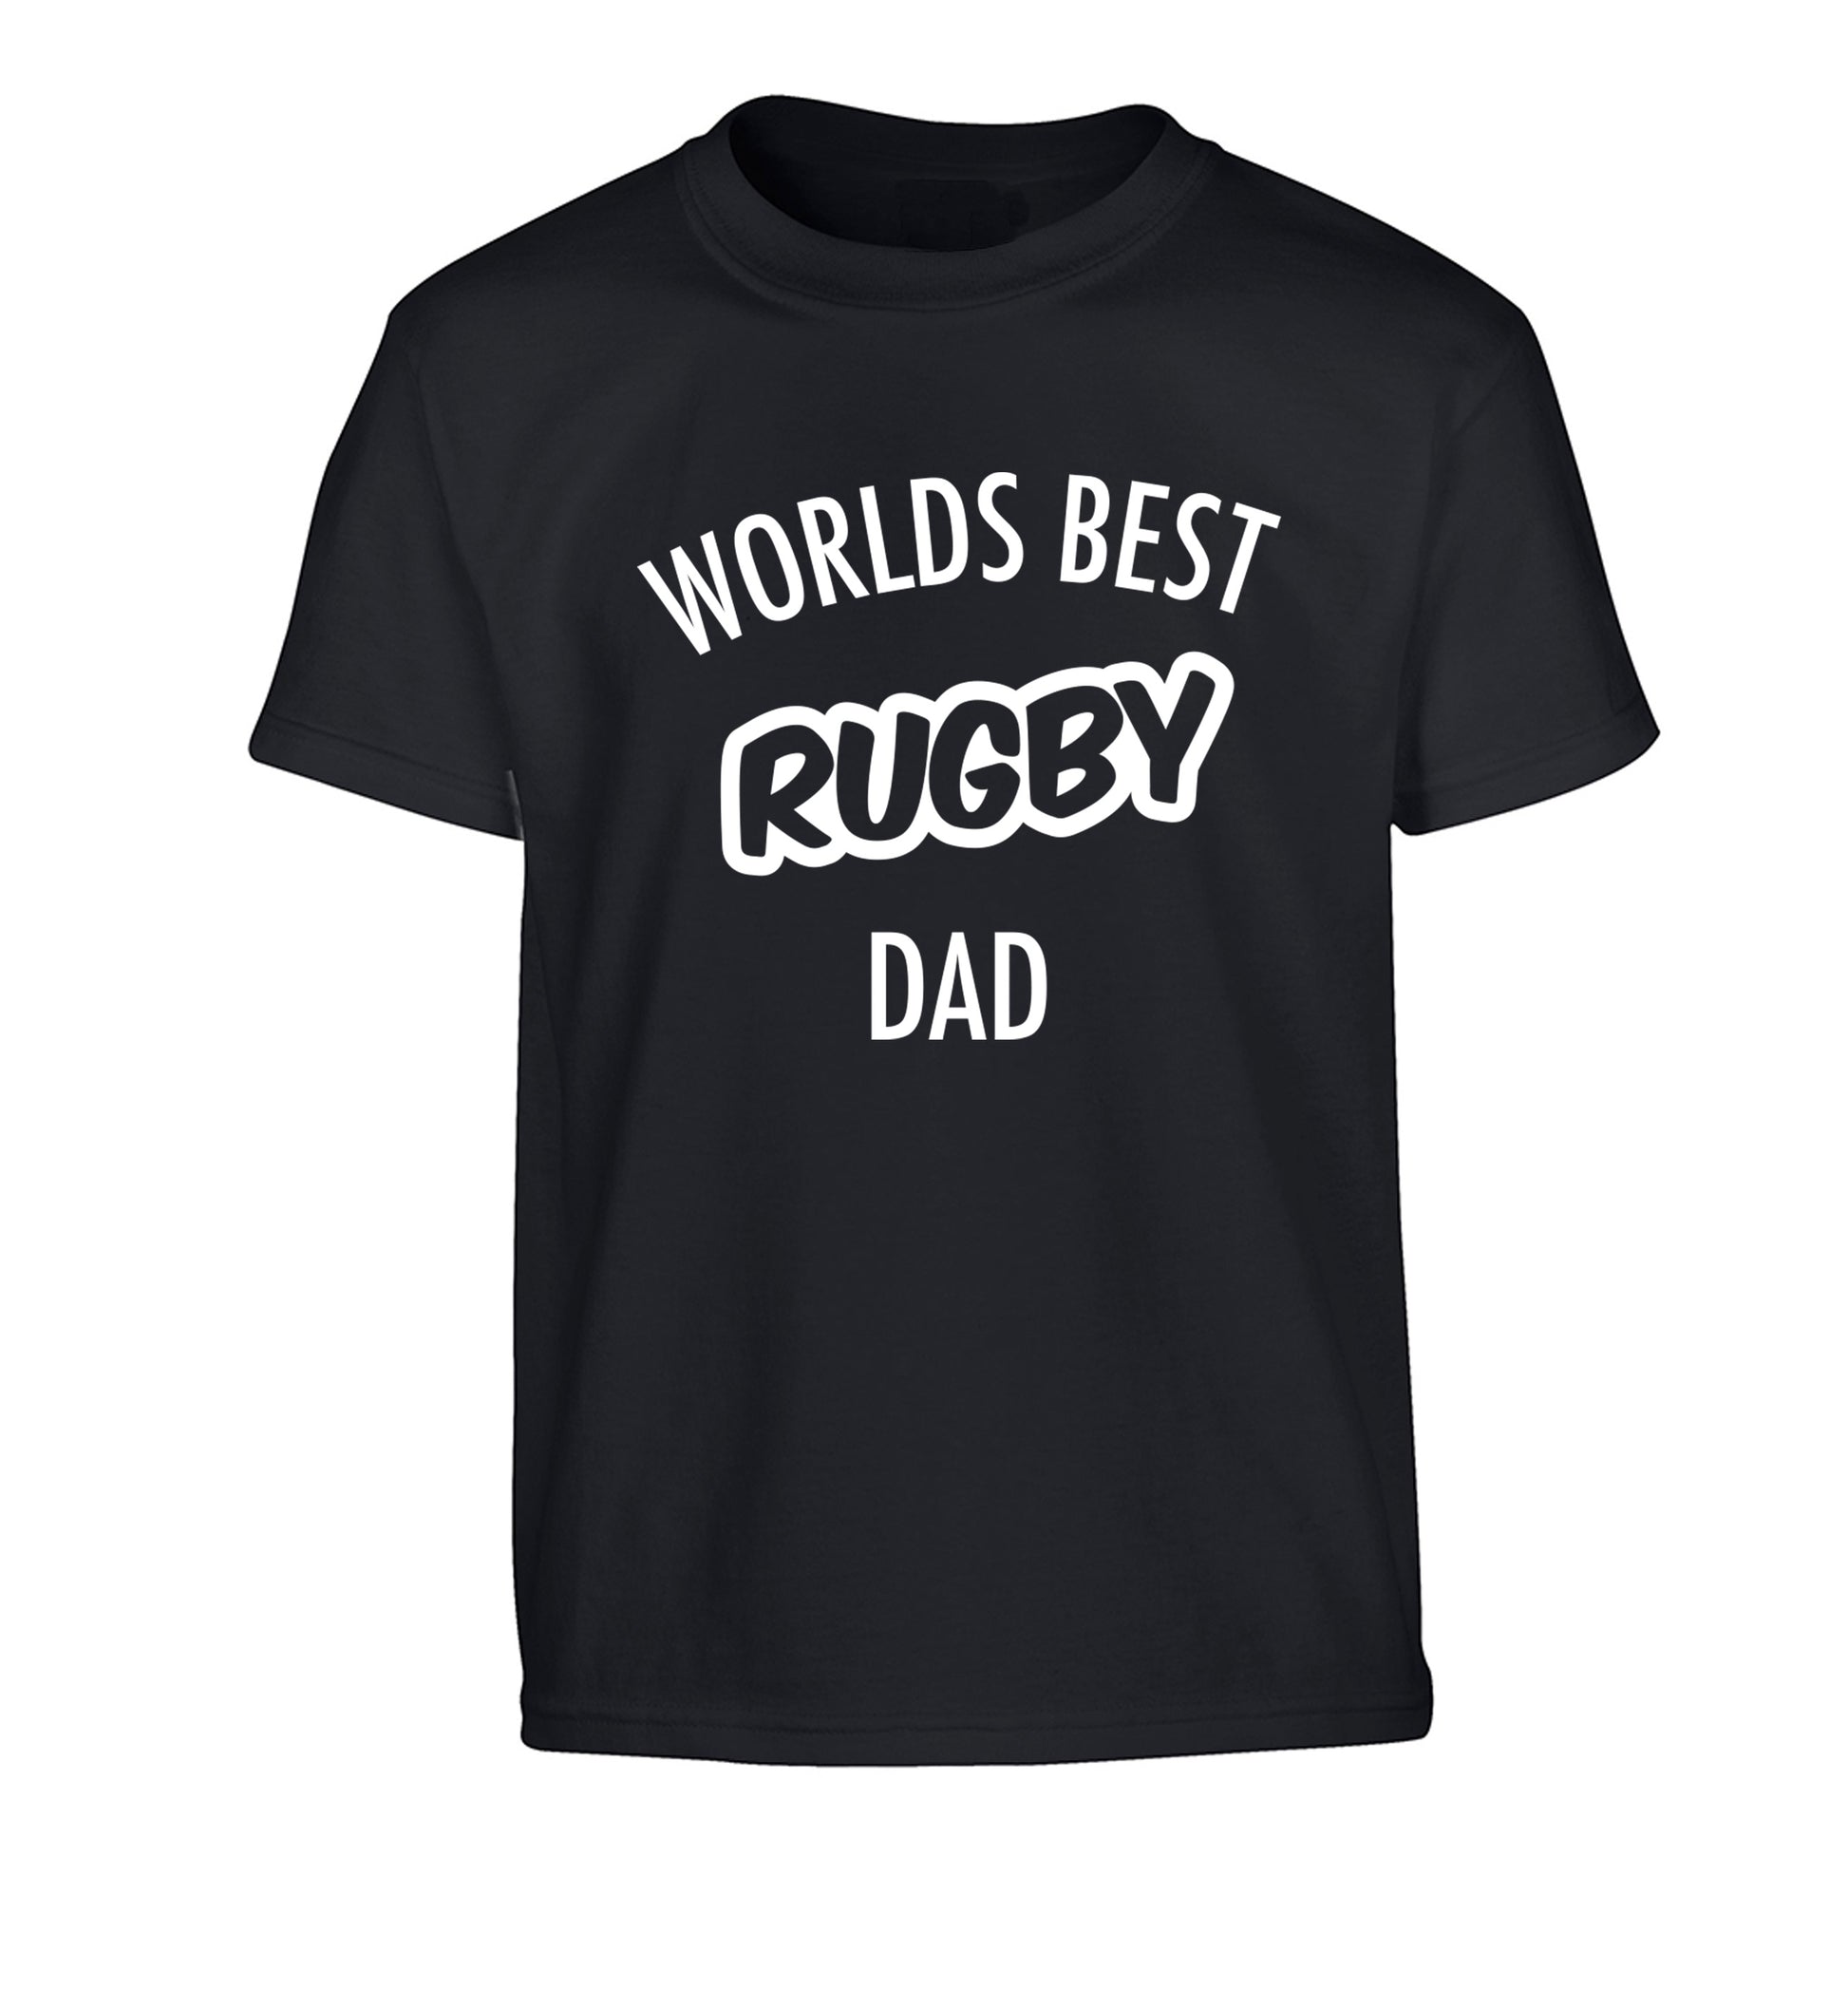 Worlds best rugby dad Children's black Tshirt 12-13 Years